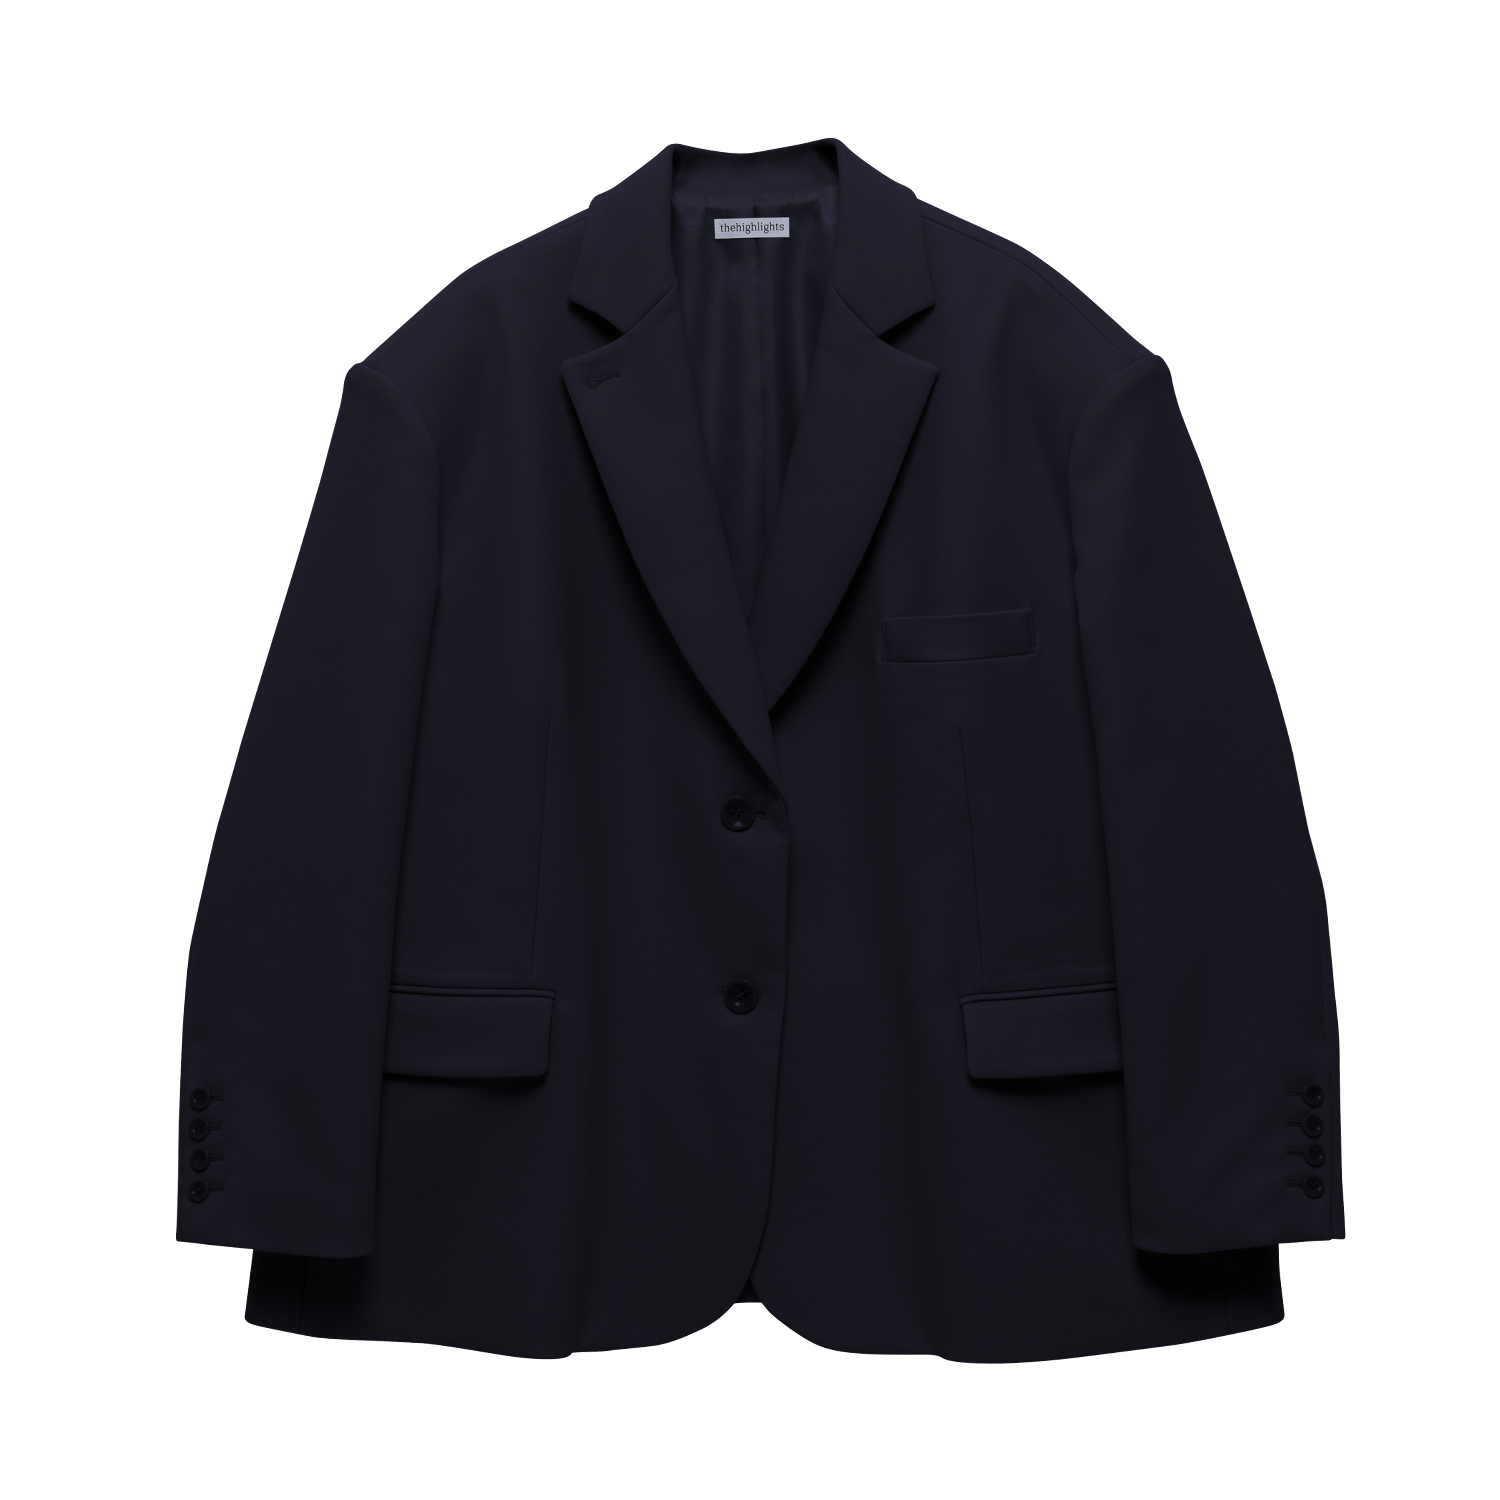 'jacket' navyblack